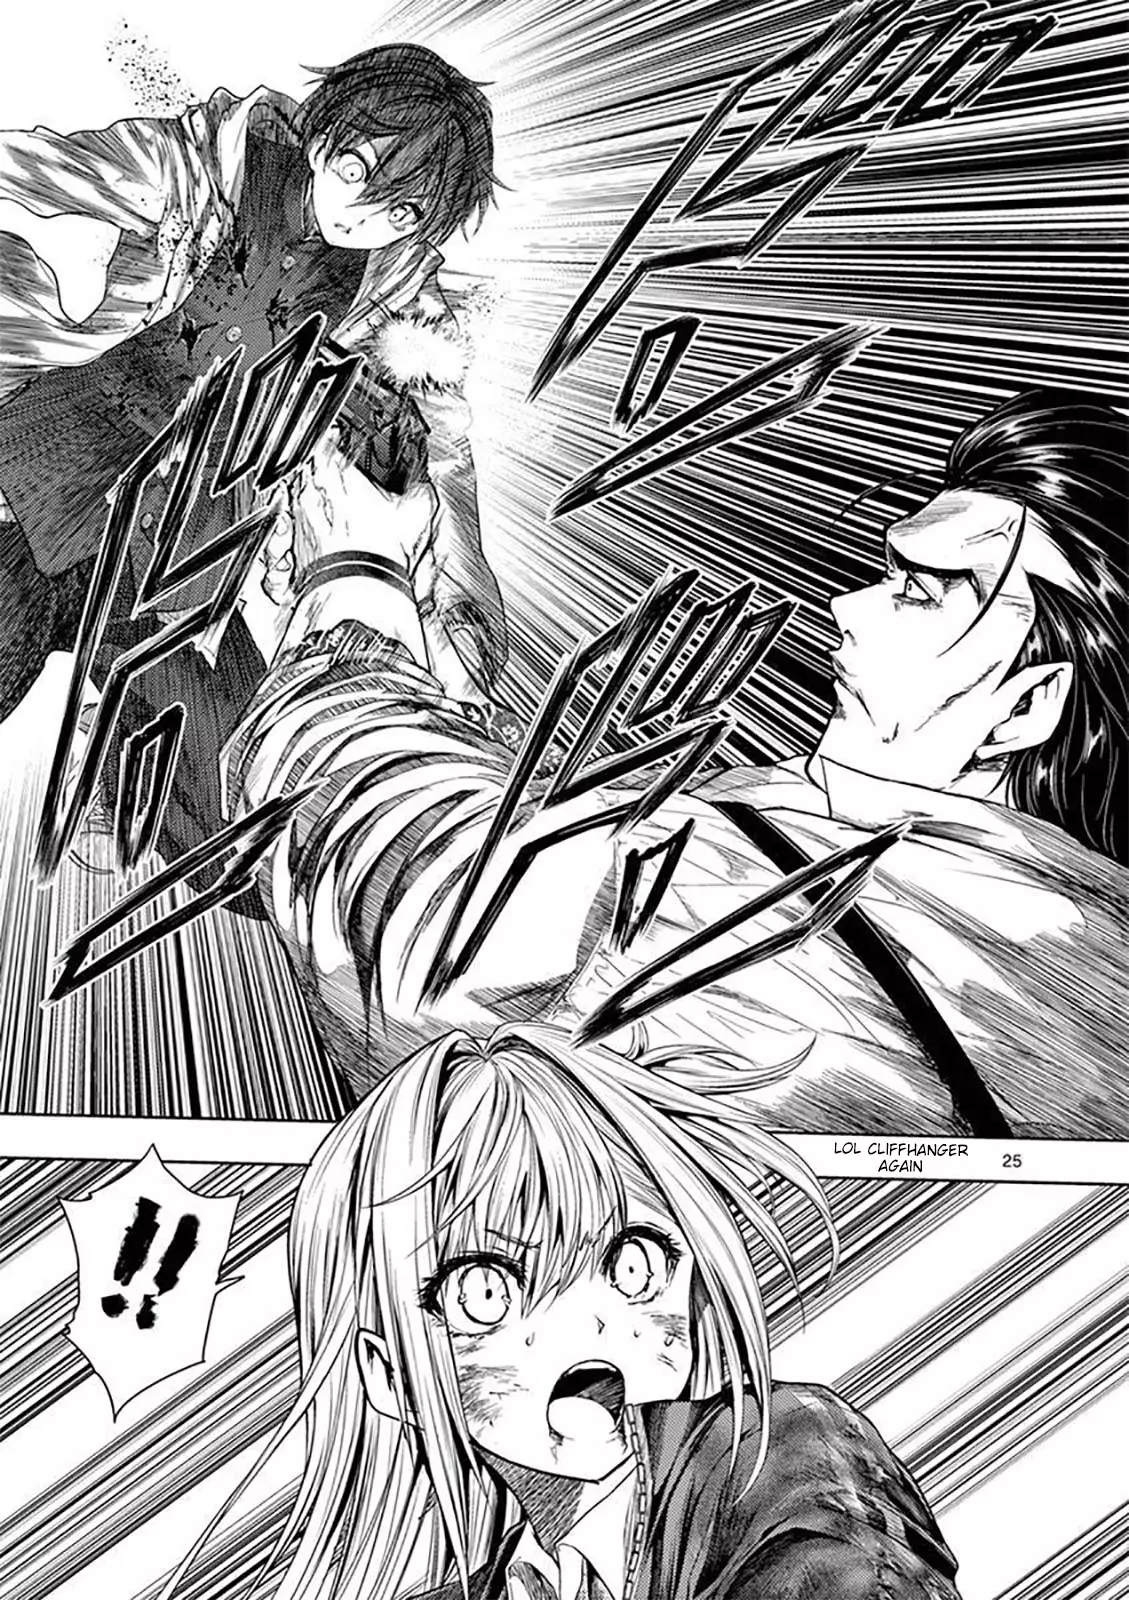 Read Deatte 5 Byou De Battle Chapter 136: Infinity Mirror on Mangakakalot